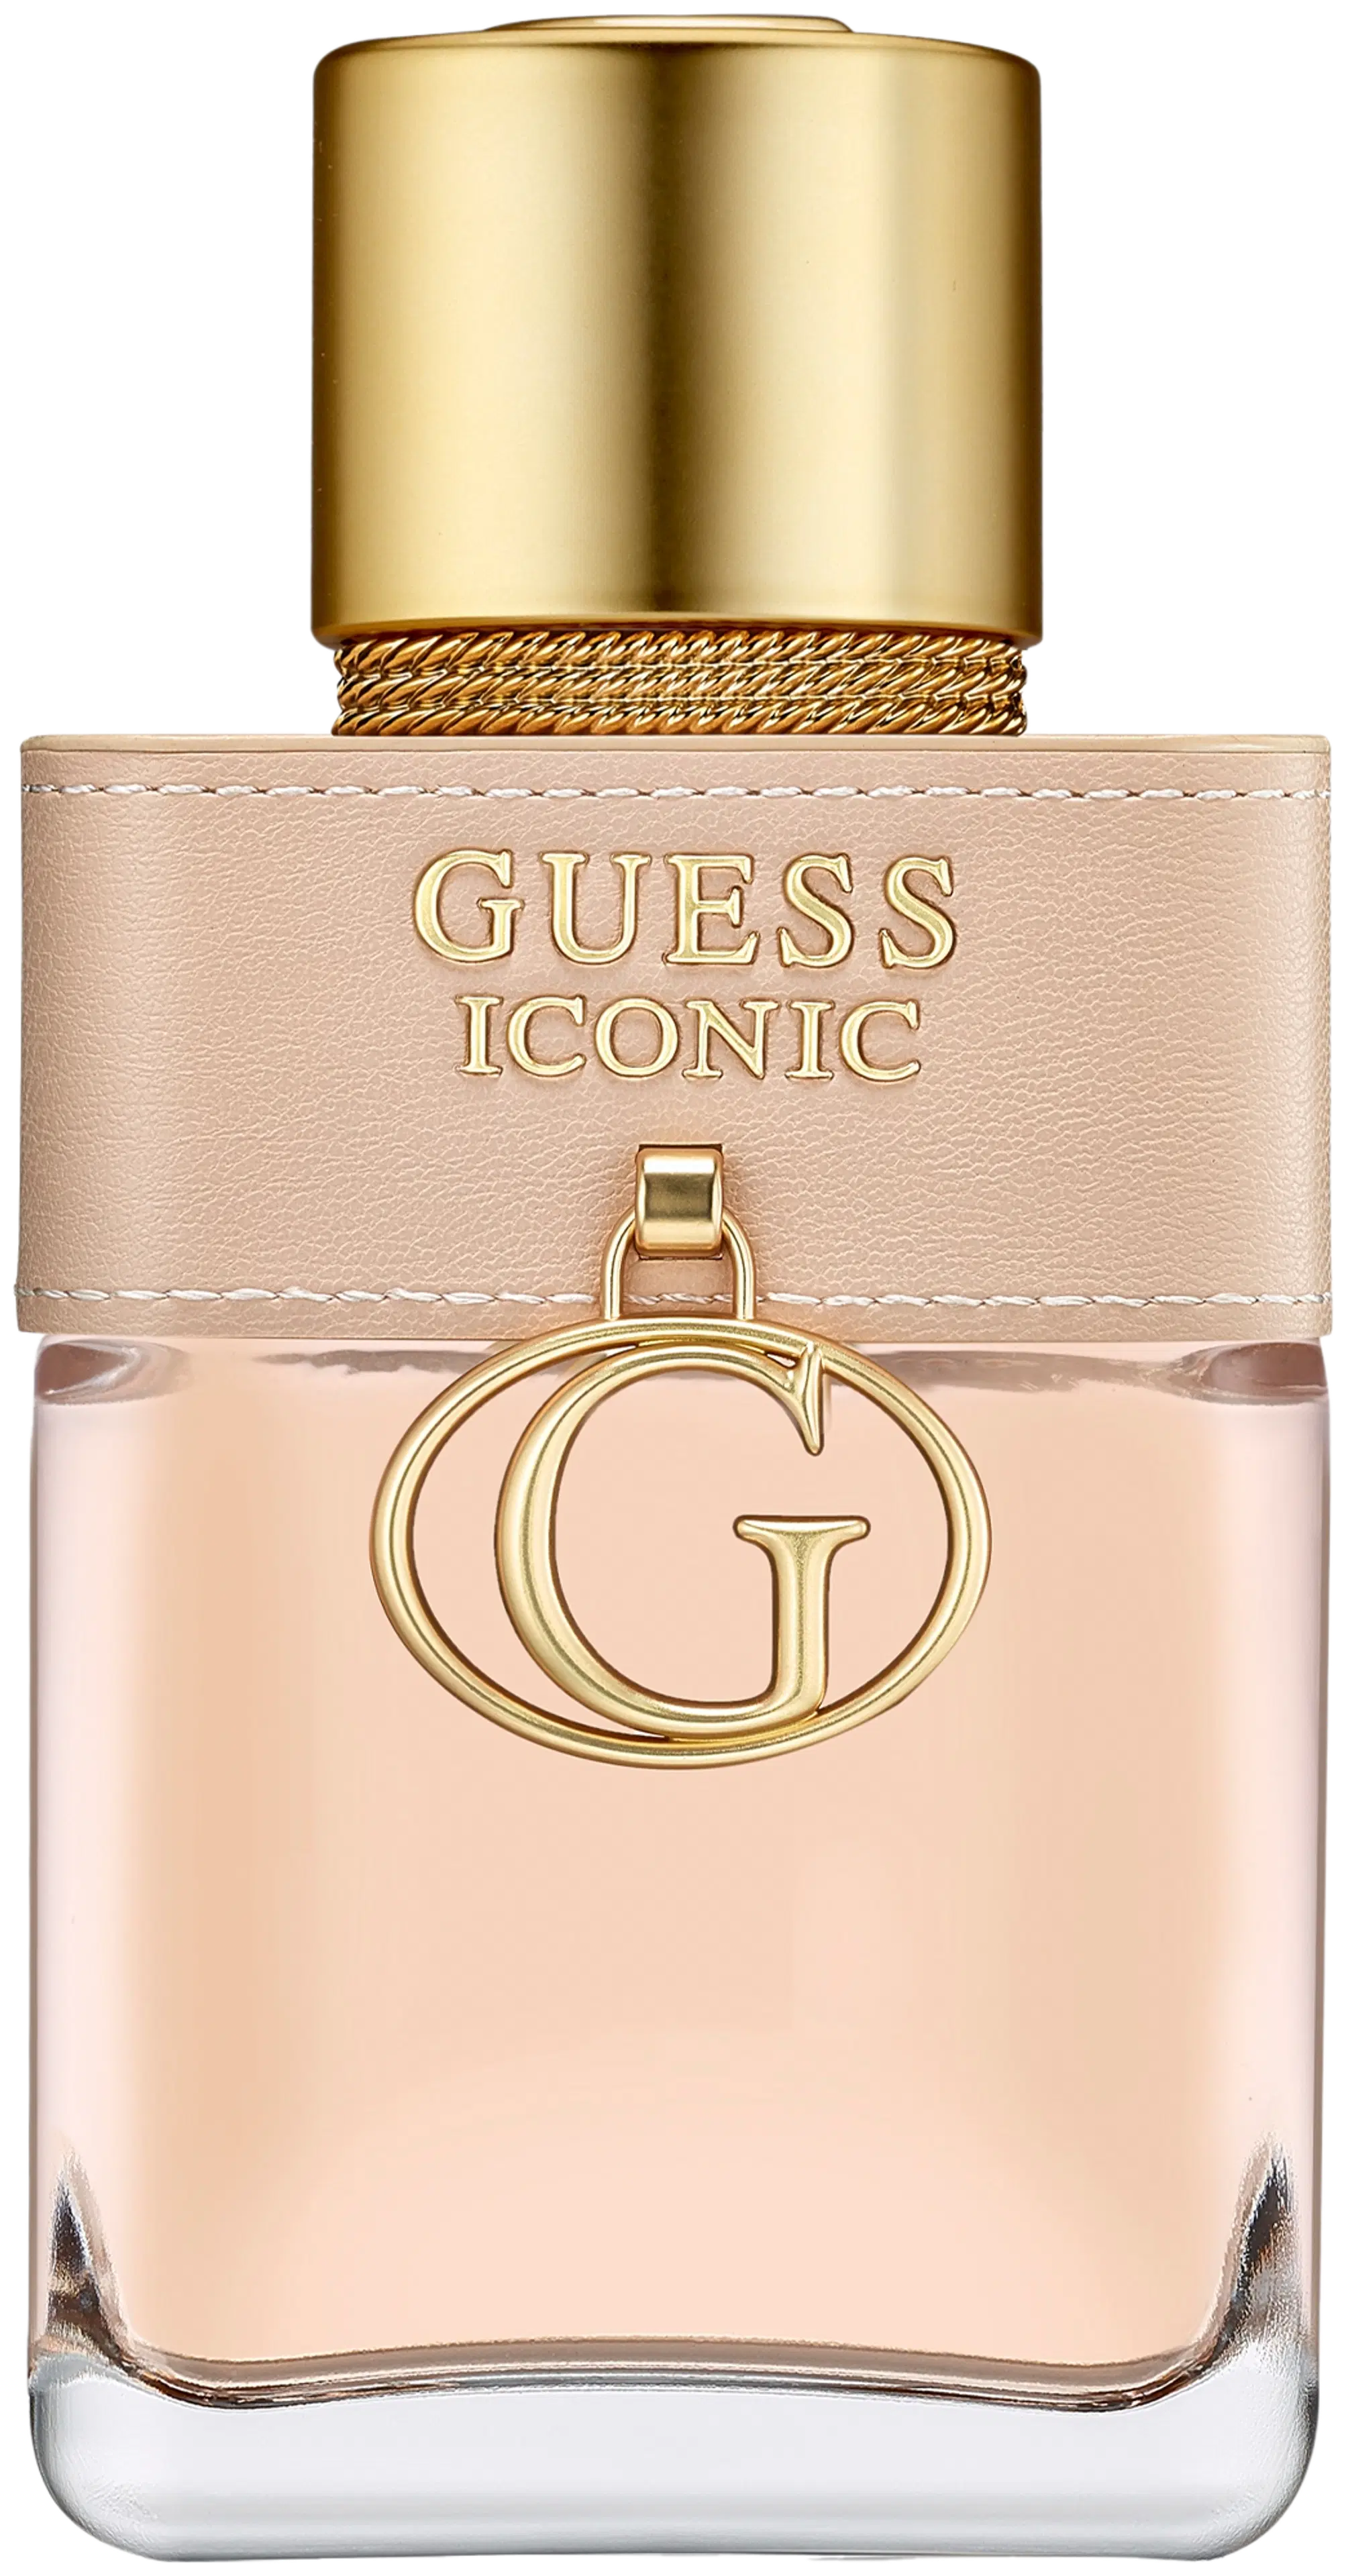 Guess Iconic for Women Eau de Parfum 50ml